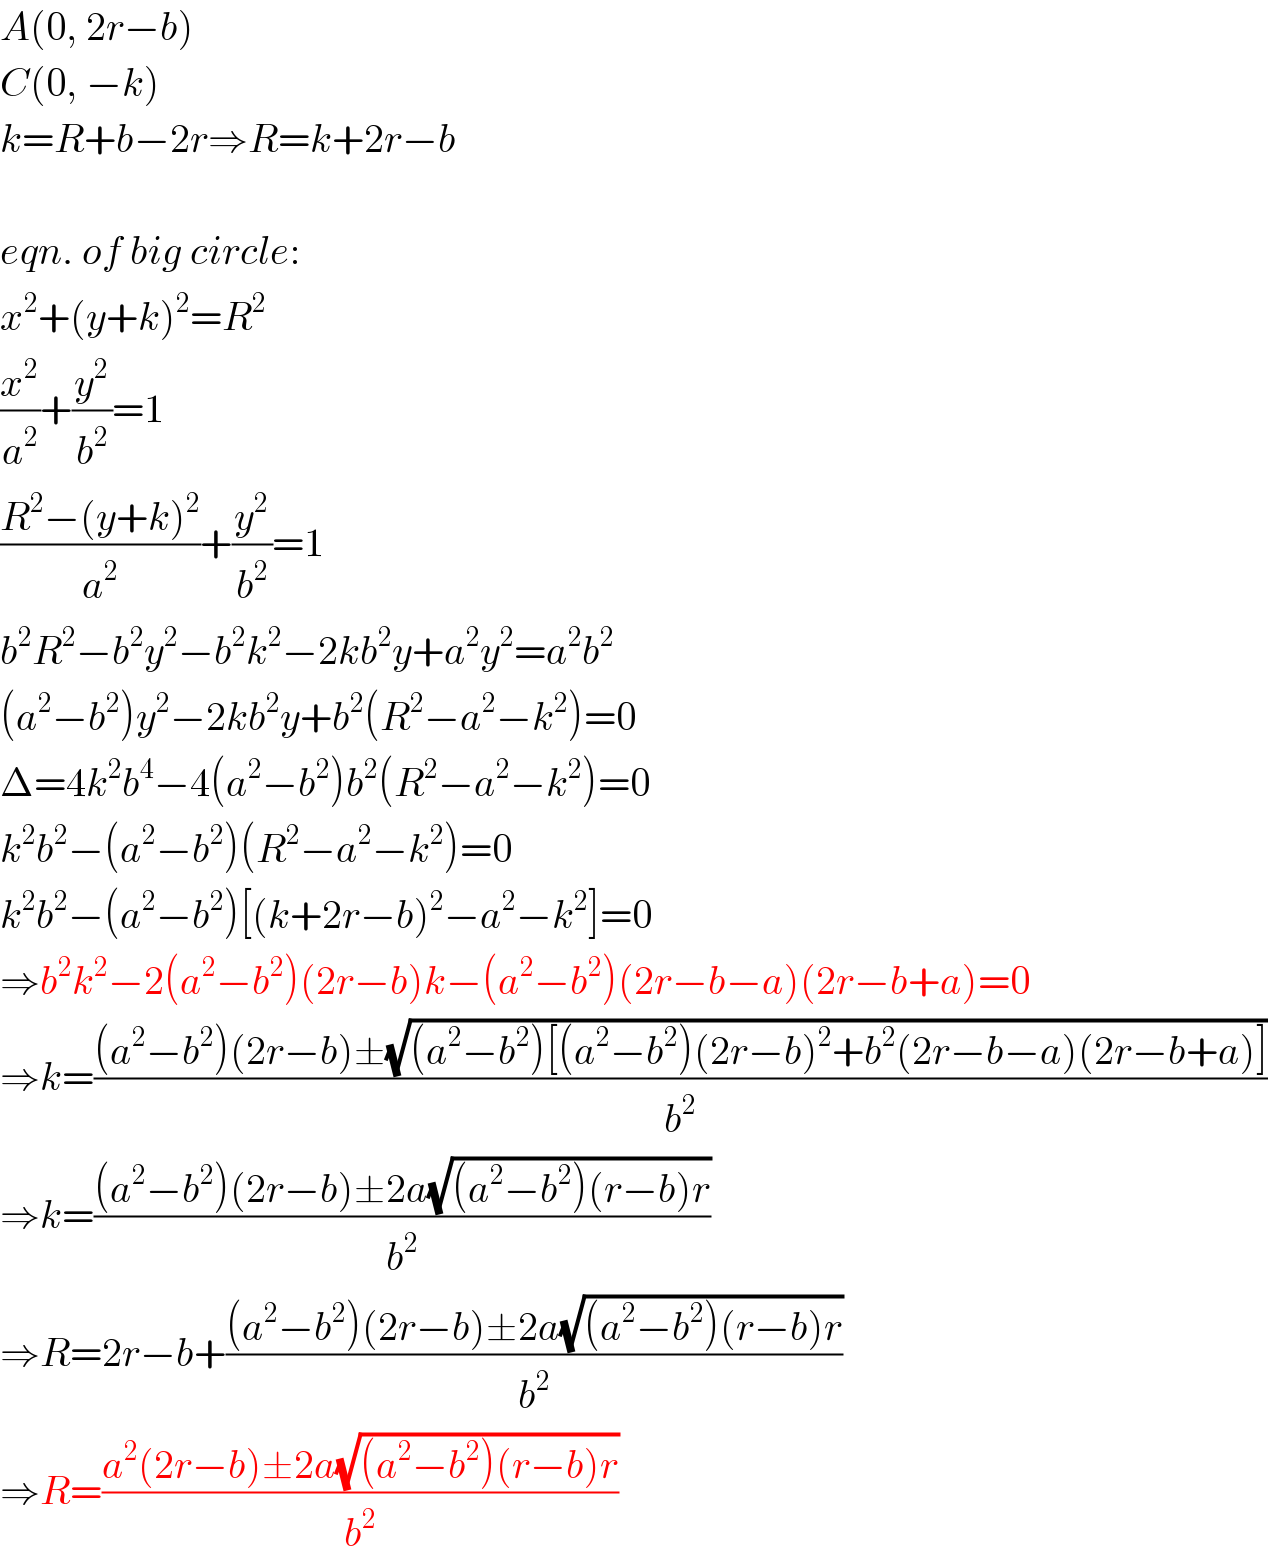 A(0, 2r−b)  C(0, −k)  k=R+b−2r⇒R=k+2r−b    eqn. of big circle:  x^2 +(y+k)^2 =R^2   (x^2 /a^2 )+(y^2 /b^2 )=1  ((R^2 −(y+k)^2 )/a^2 )+(y^2 /b^2 )=1  b^2 R^2 −b^2 y^2 −b^2 k^2 −2kb^2 y+a^2 y^2 =a^2 b^2   (a^2 −b^2 )y^2 −2kb^2 y+b^2 (R^2 −a^2 −k^2 )=0  Δ=4k^2 b^4 −4(a^2 −b^2 )b^2 (R^2 −a^2 −k^2 )=0  k^2 b^2 −(a^2 −b^2 )(R^2 −a^2 −k^2 )=0  k^2 b^2 −(a^2 −b^2 )[(k+2r−b)^2 −a^2 −k^2 ]=0  ⇒b^2 k^2 −2(a^2 −b^2 )(2r−b)k−(a^2 −b^2 )(2r−b−a)(2r−b+a)=0  ⇒k=(((a^2 −b^2 )(2r−b)±(√((a^2 −b^2 )[(a^2 −b^2 )(2r−b)^2 +b^2 (2r−b−a)(2r−b+a)])))/b^2 )  ⇒k=(((a^2 −b^2 )(2r−b)±2a(√((a^2 −b^2 )(r−b)r)))/b^2 )  ⇒R=2r−b+(((a^2 −b^2 )(2r−b)±2a(√((a^2 −b^2 )(r−b)r)))/b^2 )  ⇒R=((a^2 (2r−b)±2a(√((a^2 −b^2 )(r−b)r)))/b^2 )  